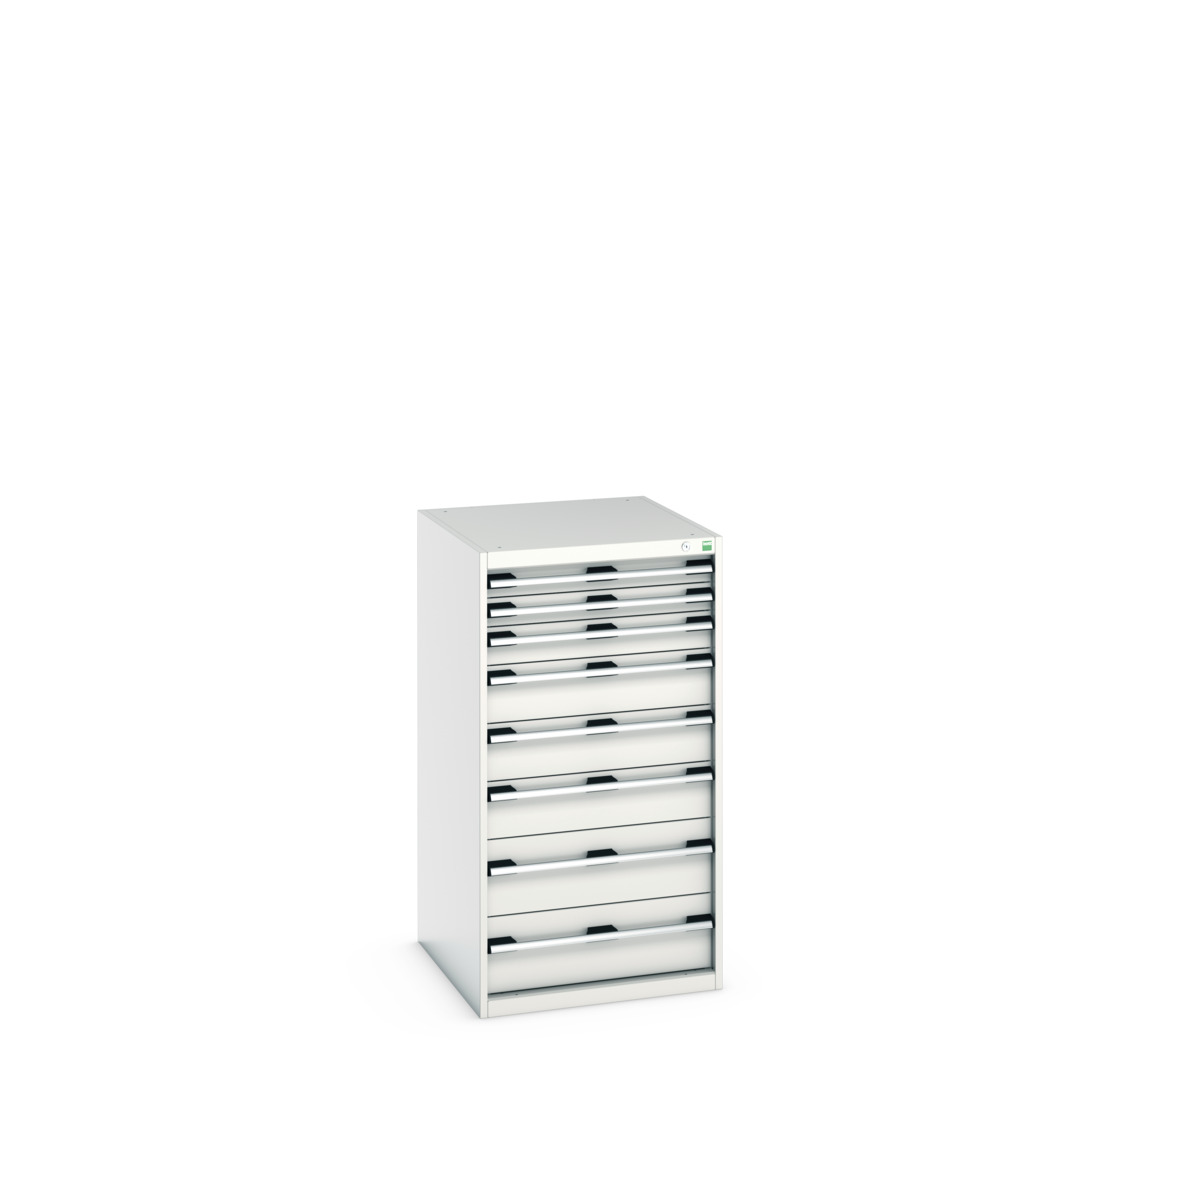 40027039.16V - cubio drawer cabinet